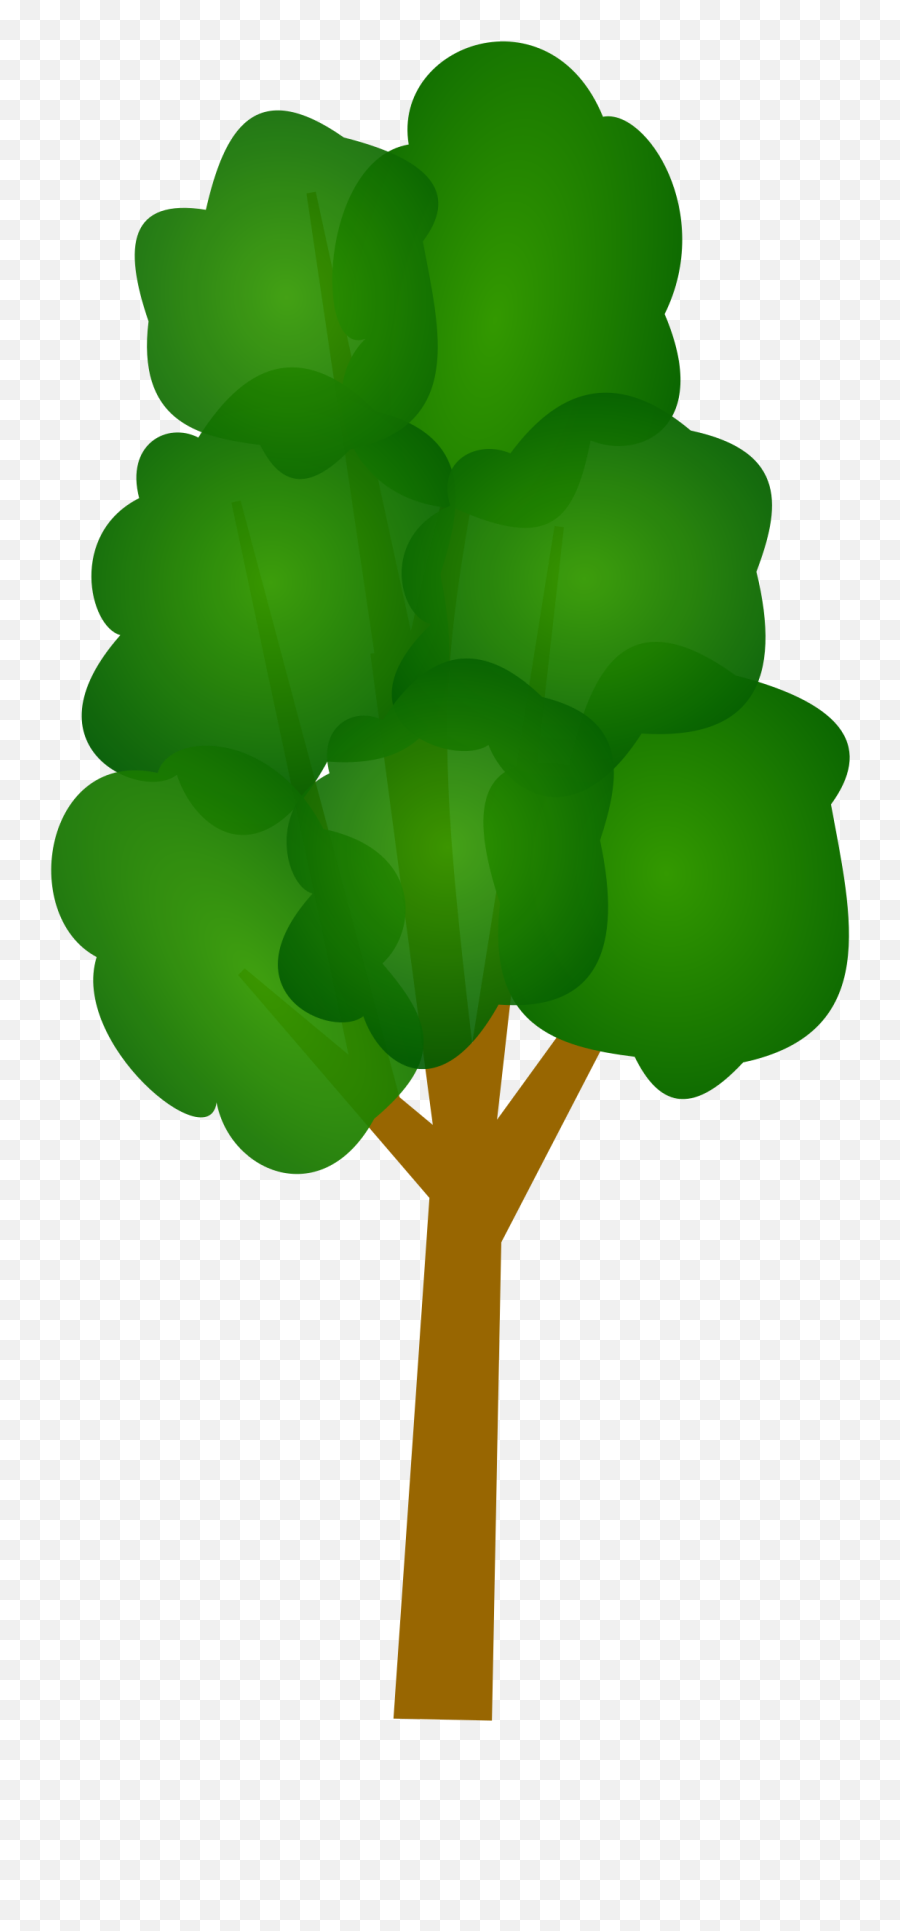 Tree Free Vector - Cartoon Tall Tree Png Emoji,Tree Hugger Emoticons